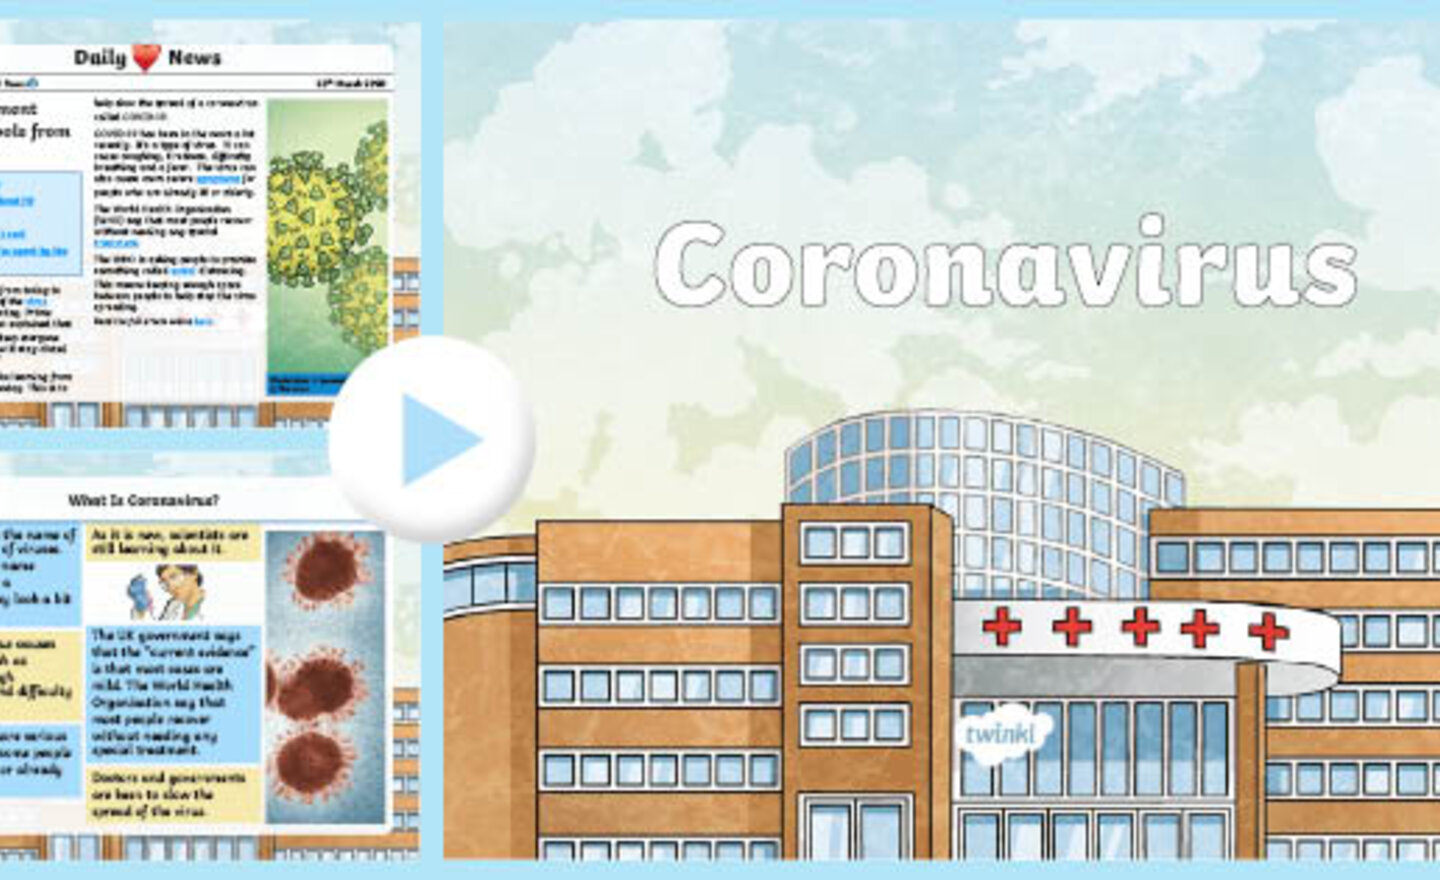 Image of Coronavirus education for children.